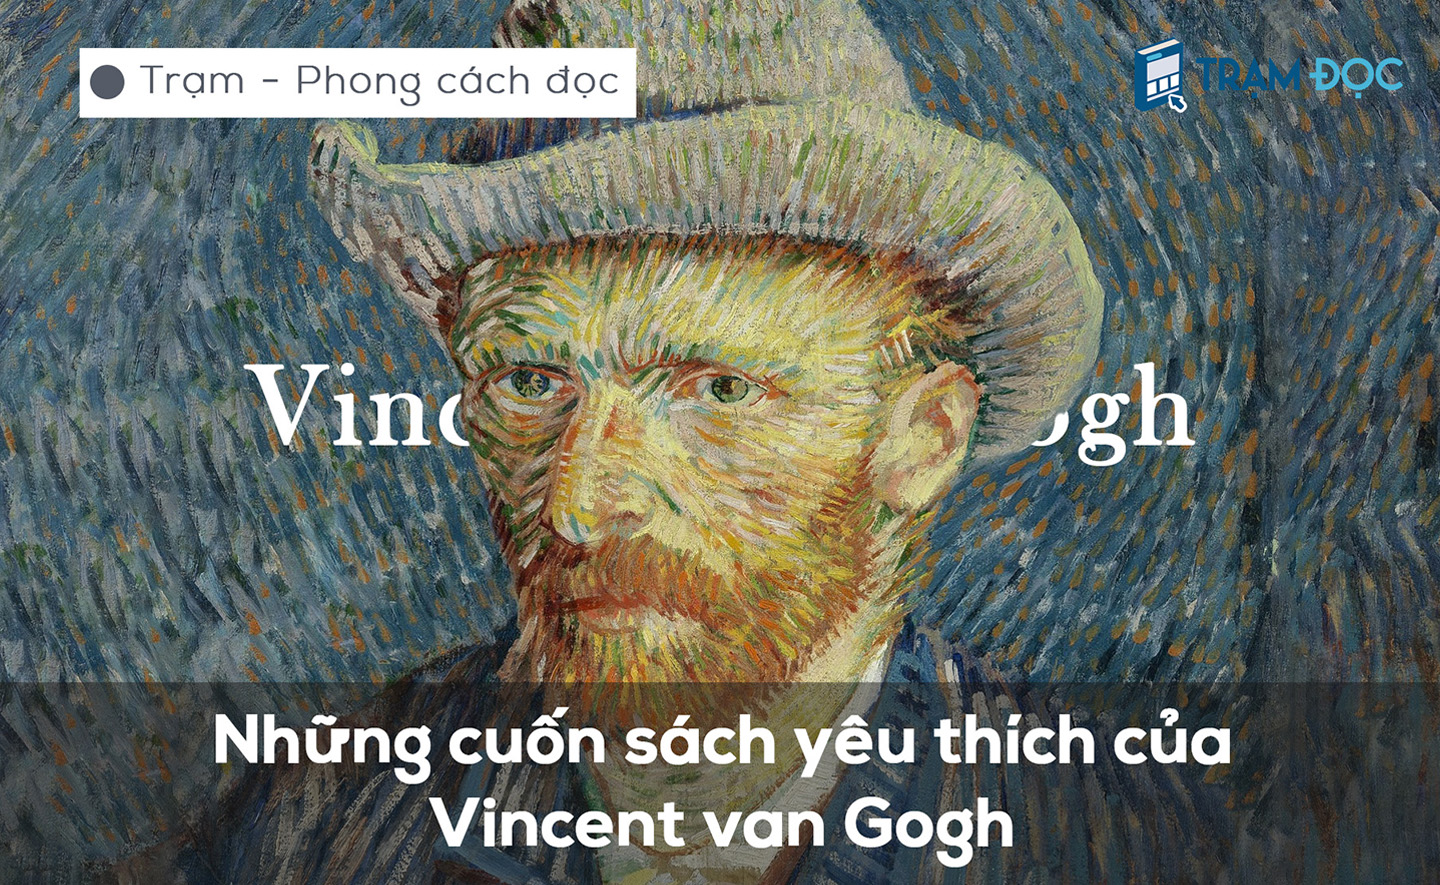  Những cuốn sách mà danh họa Van Gogh yêu thích